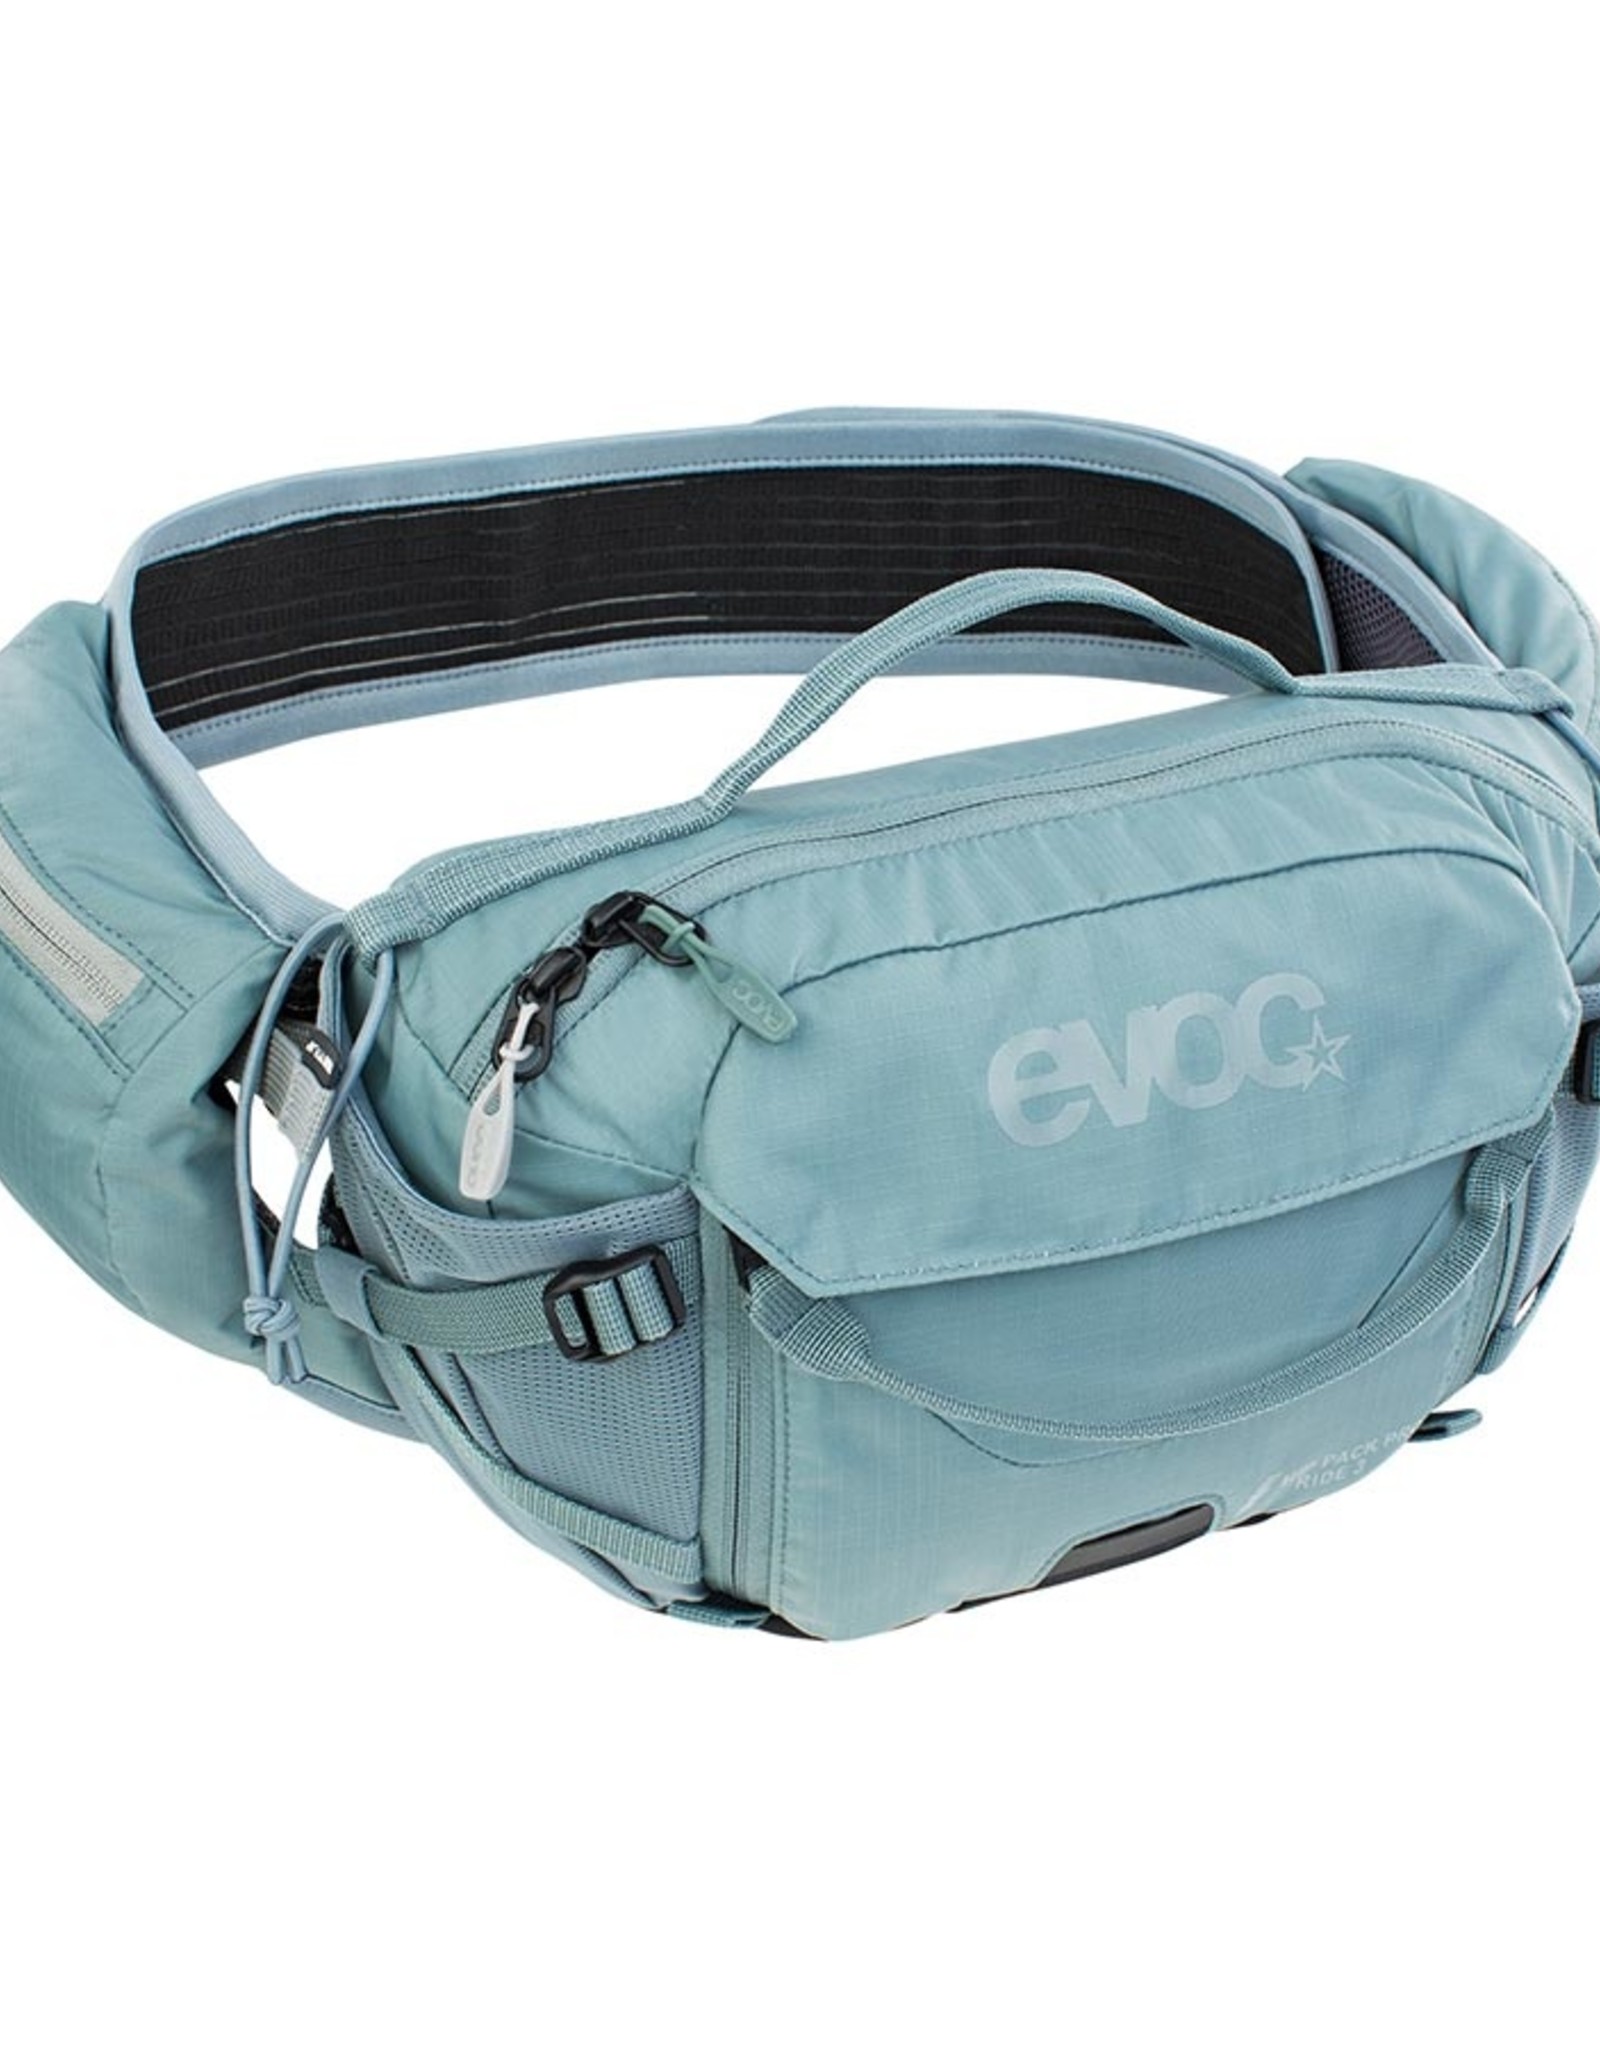 EVOC EVOC, Hip Pack Pro E-Ride, Hydration Bag, Volume: 3L, Bladder: Not included, Steel